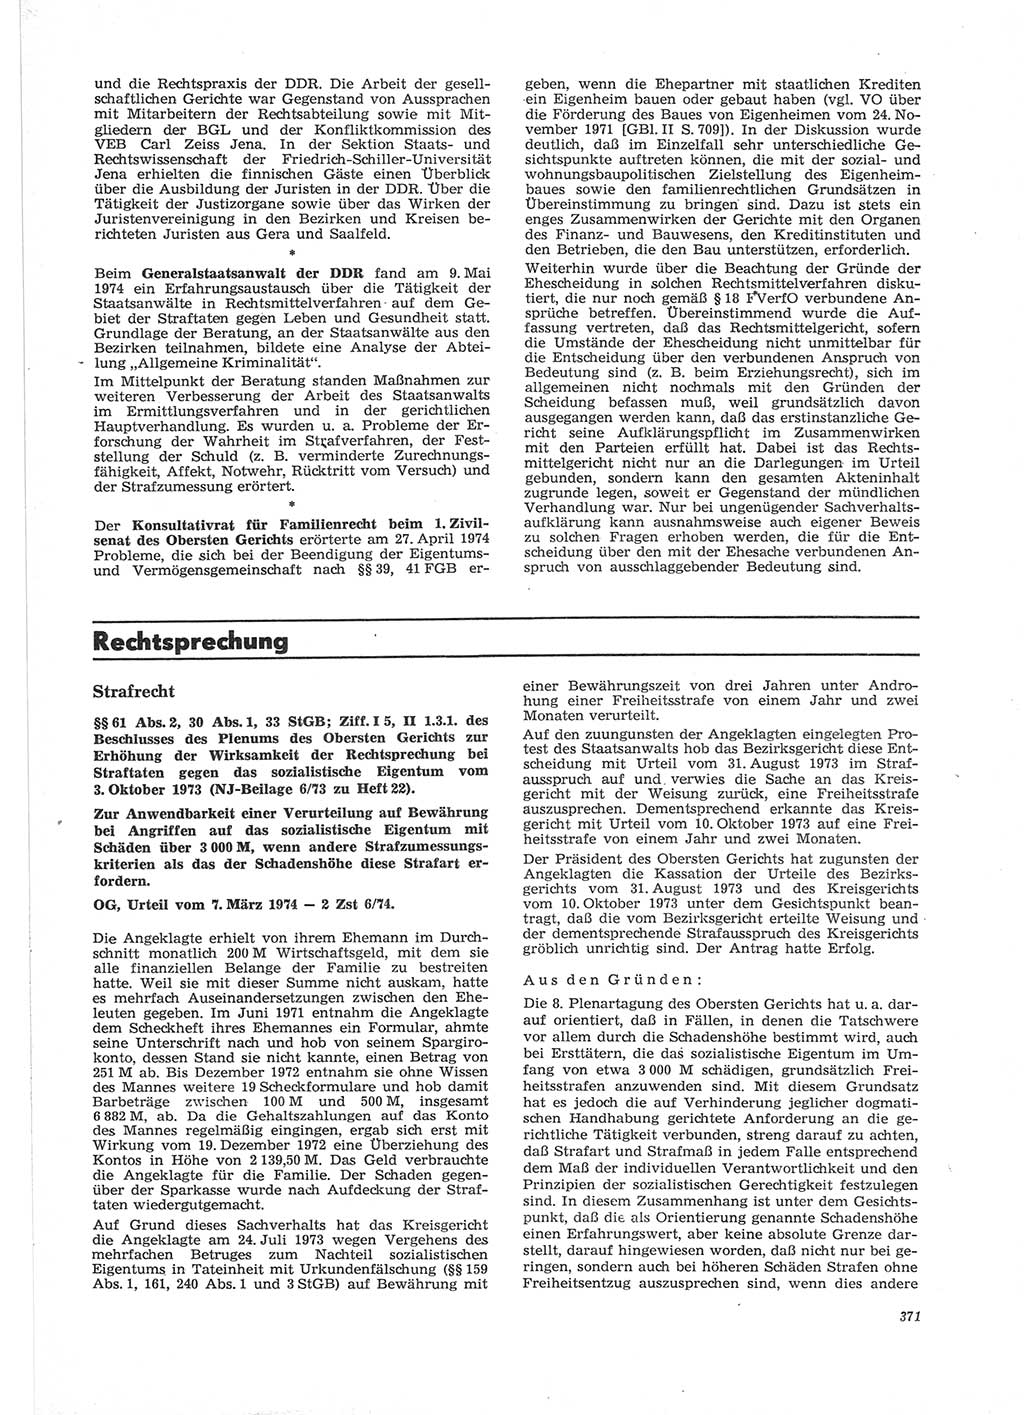 Neue Justiz (NJ), Zeitschrift für Recht und Rechtswissenschaft [Deutsche Demokratische Republik (DDR)], 28. Jahrgang 1974, Seite 371 (NJ DDR 1974, S. 371)